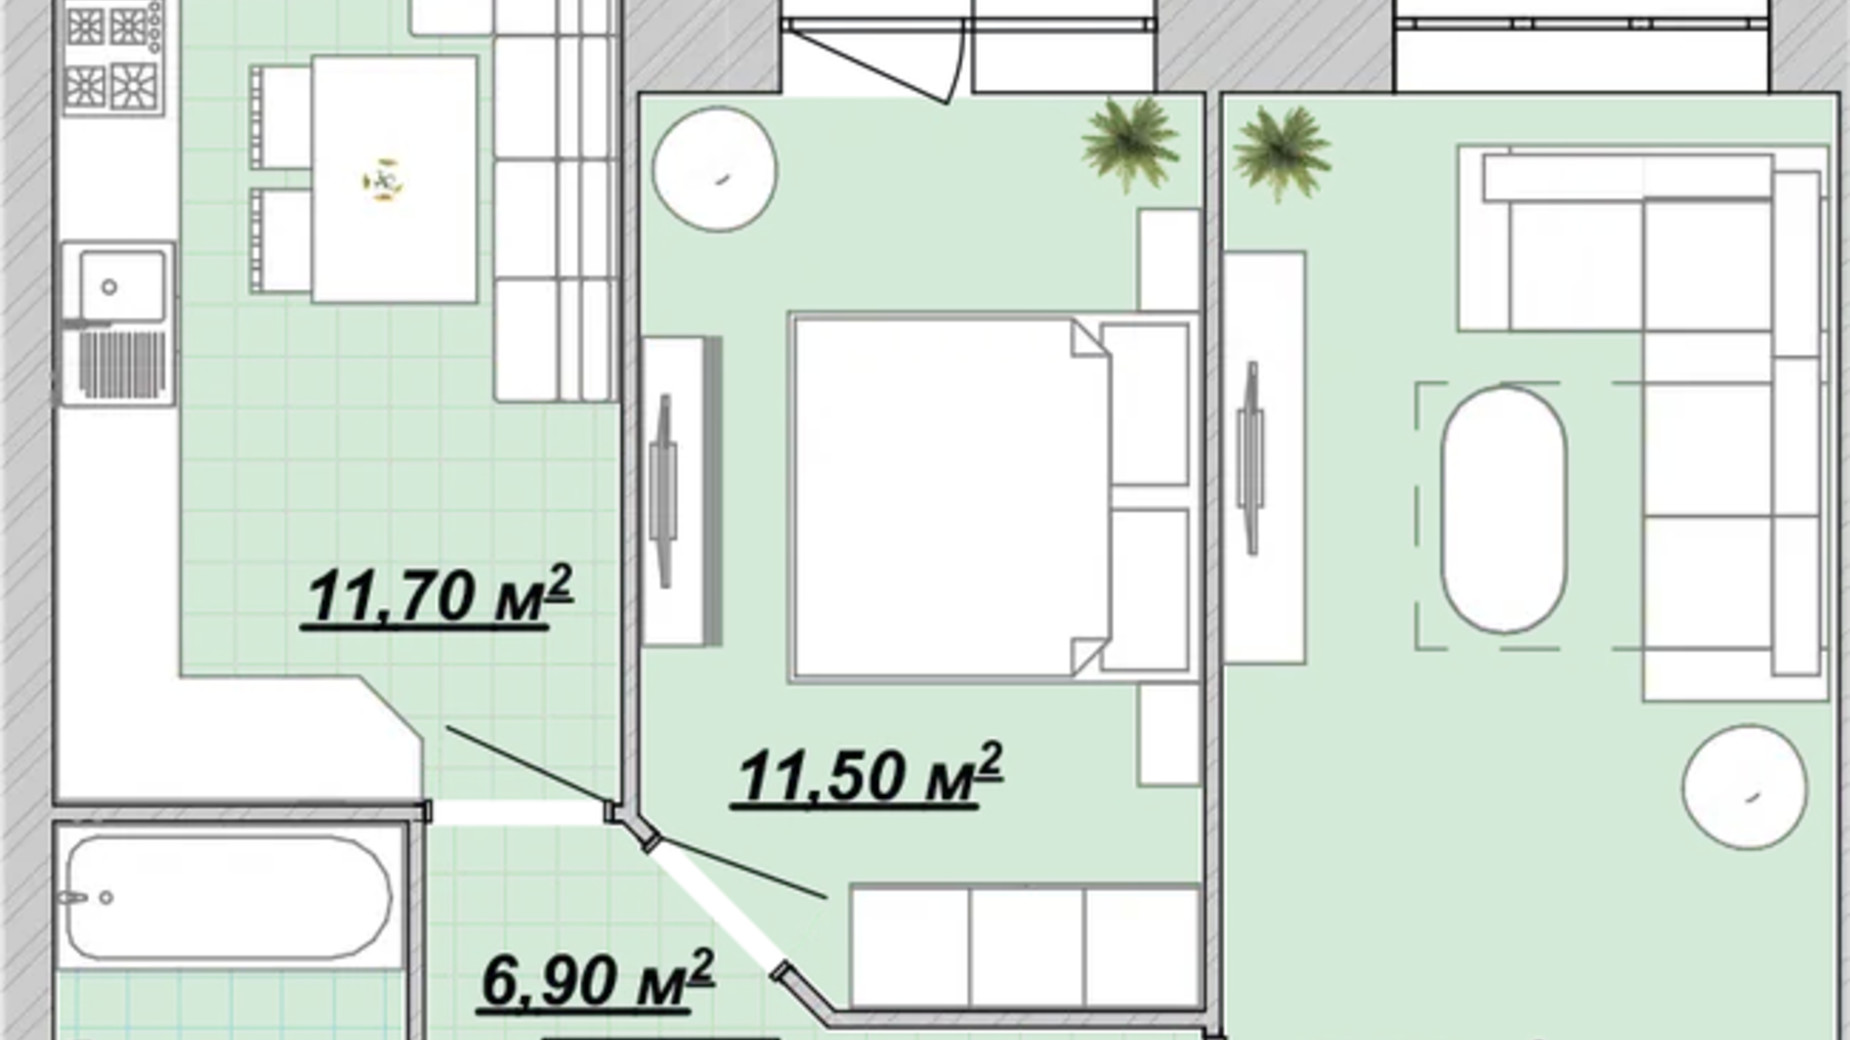 Планування 2-кімнатної квартири в Житловий район Княгинин 55.3 м², фото 706514